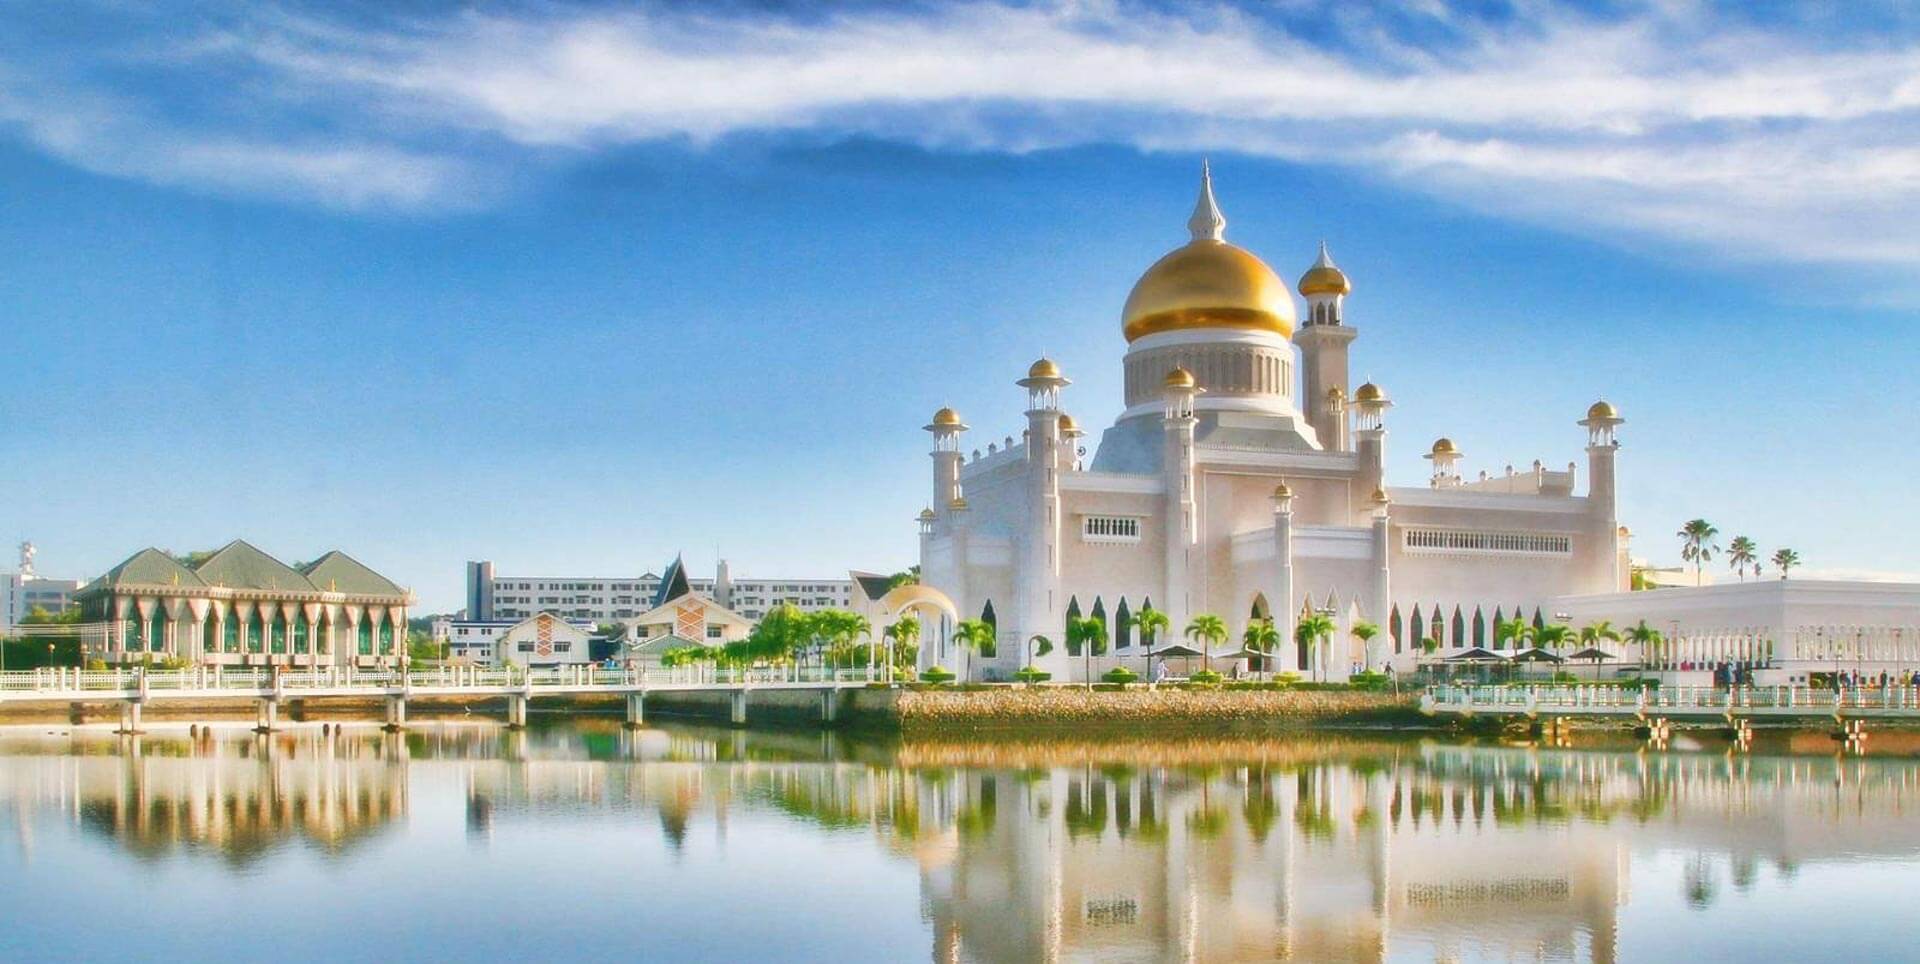 Source: Regus Brunei